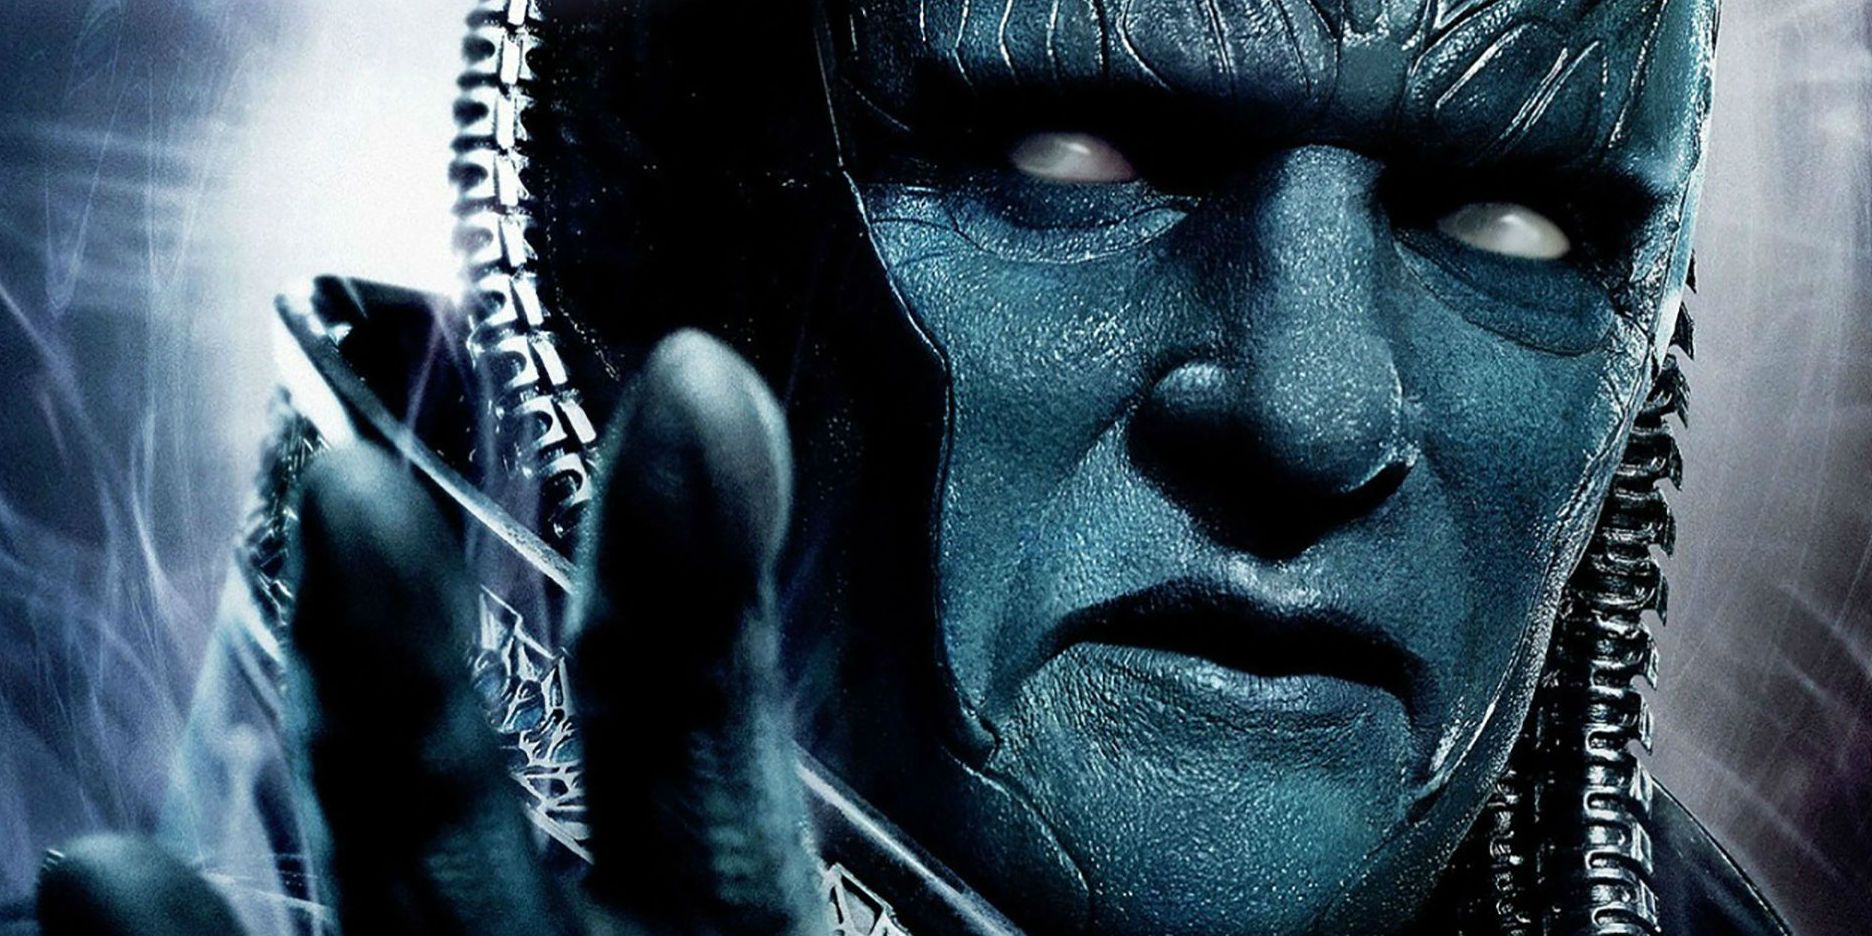 “Te convertiré en algo más”: Apocalypse Cosplay trata al villano de X-Men como el Dios oscuro que es